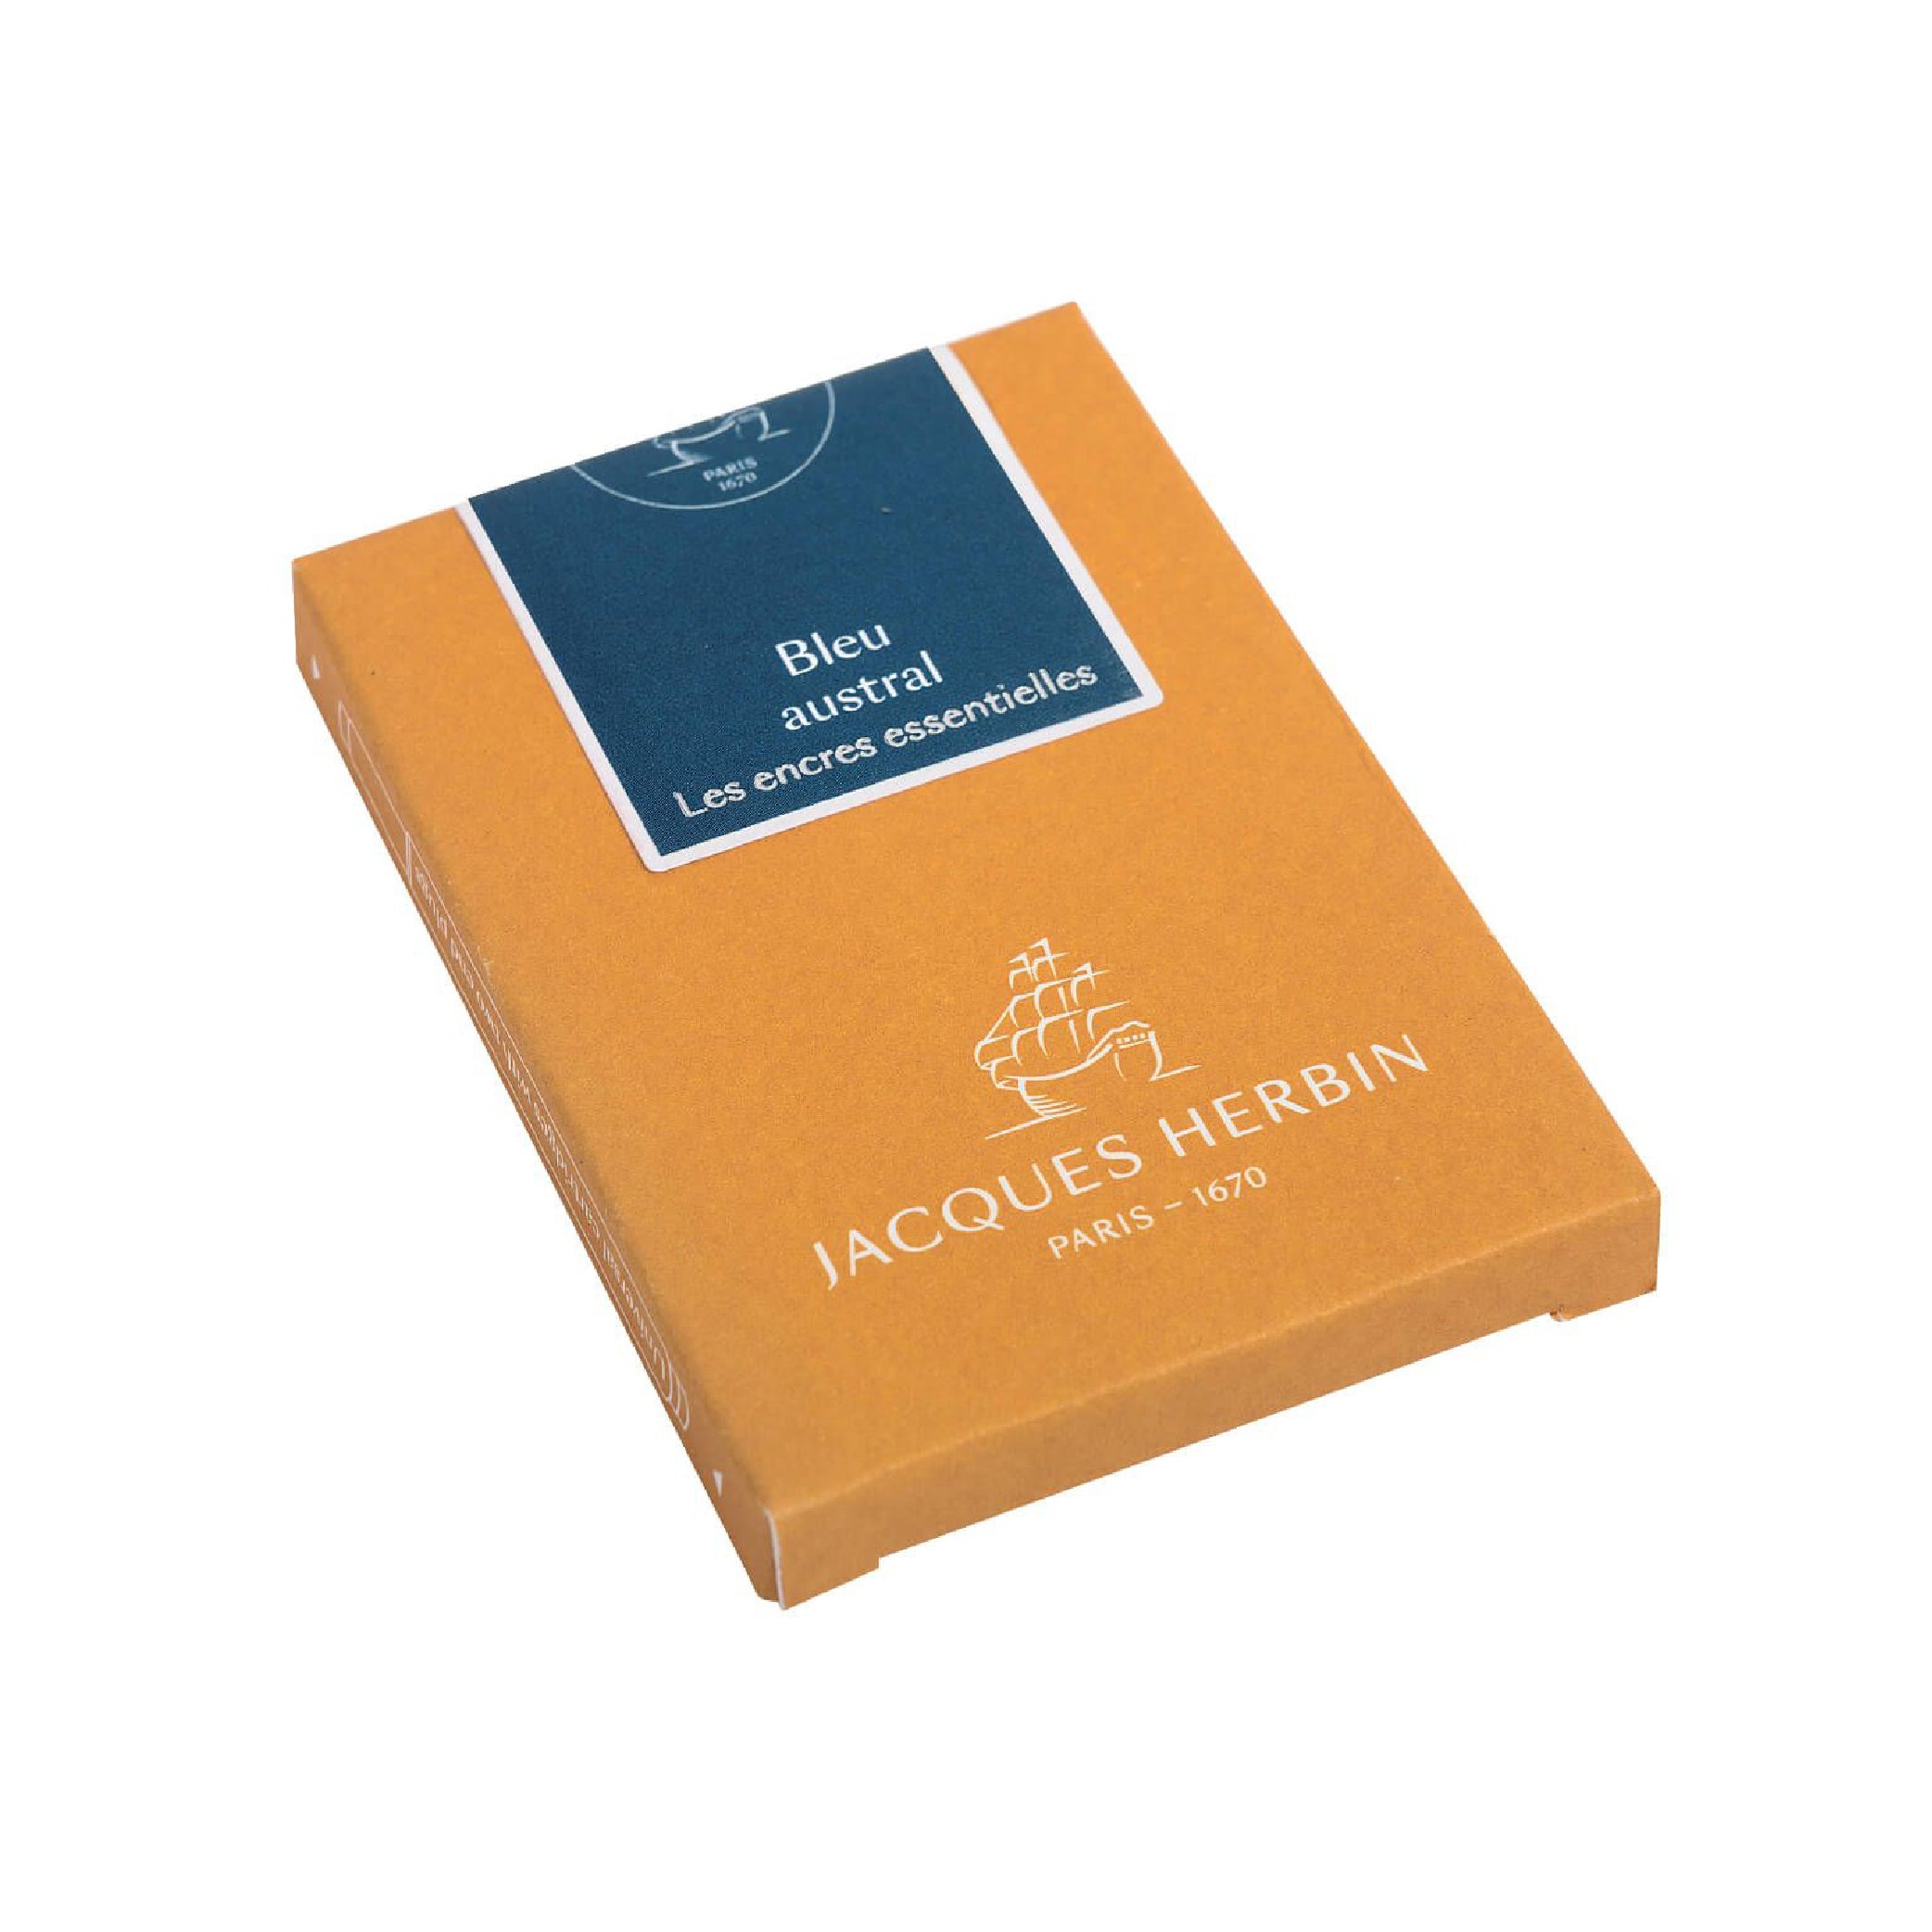 JACQUES HERBIN Essentials Cartridges 7s Bleu Austral Default Title